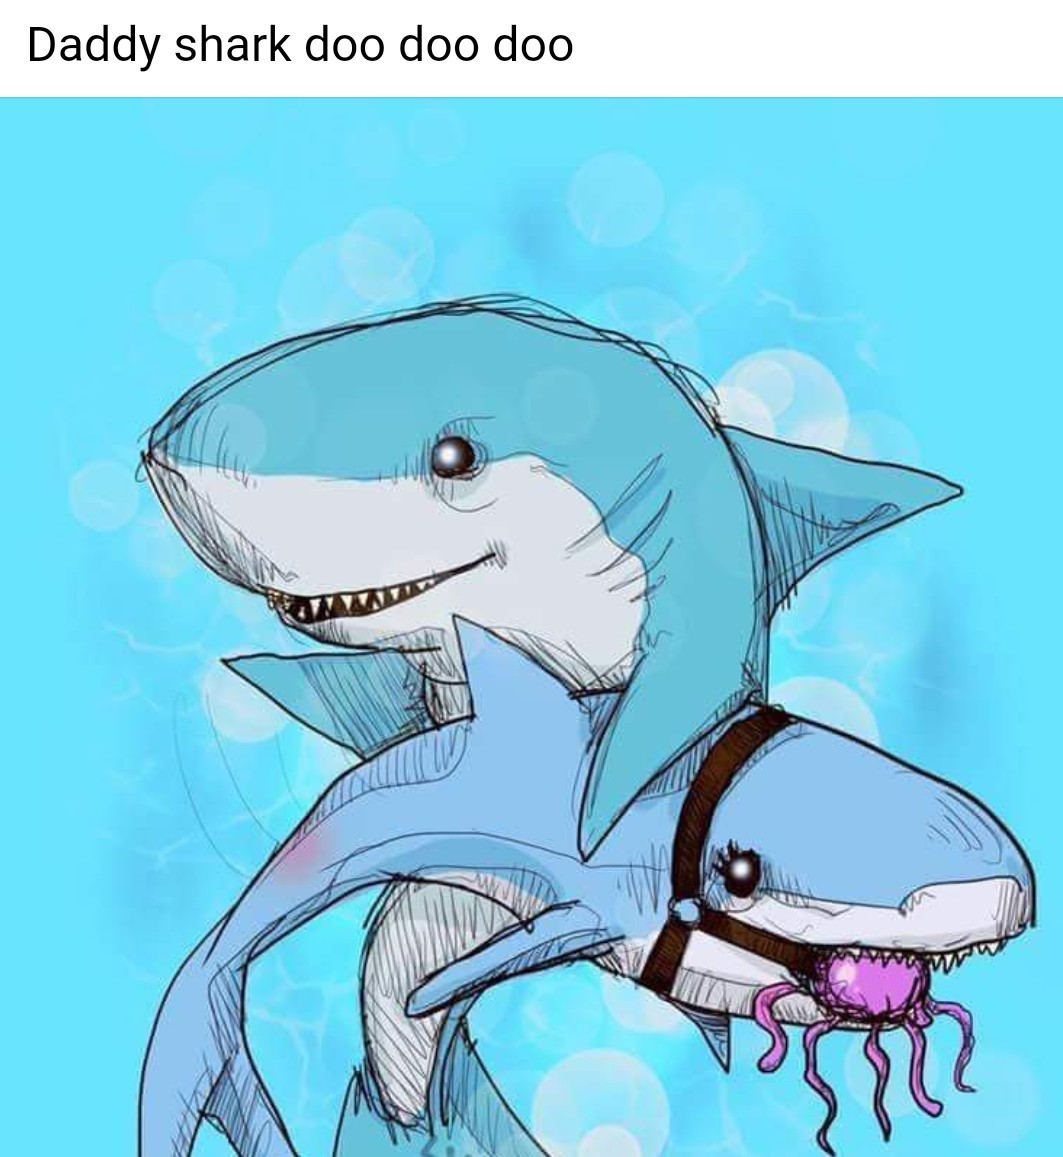 Kinky sharks do doo do doo do - meme